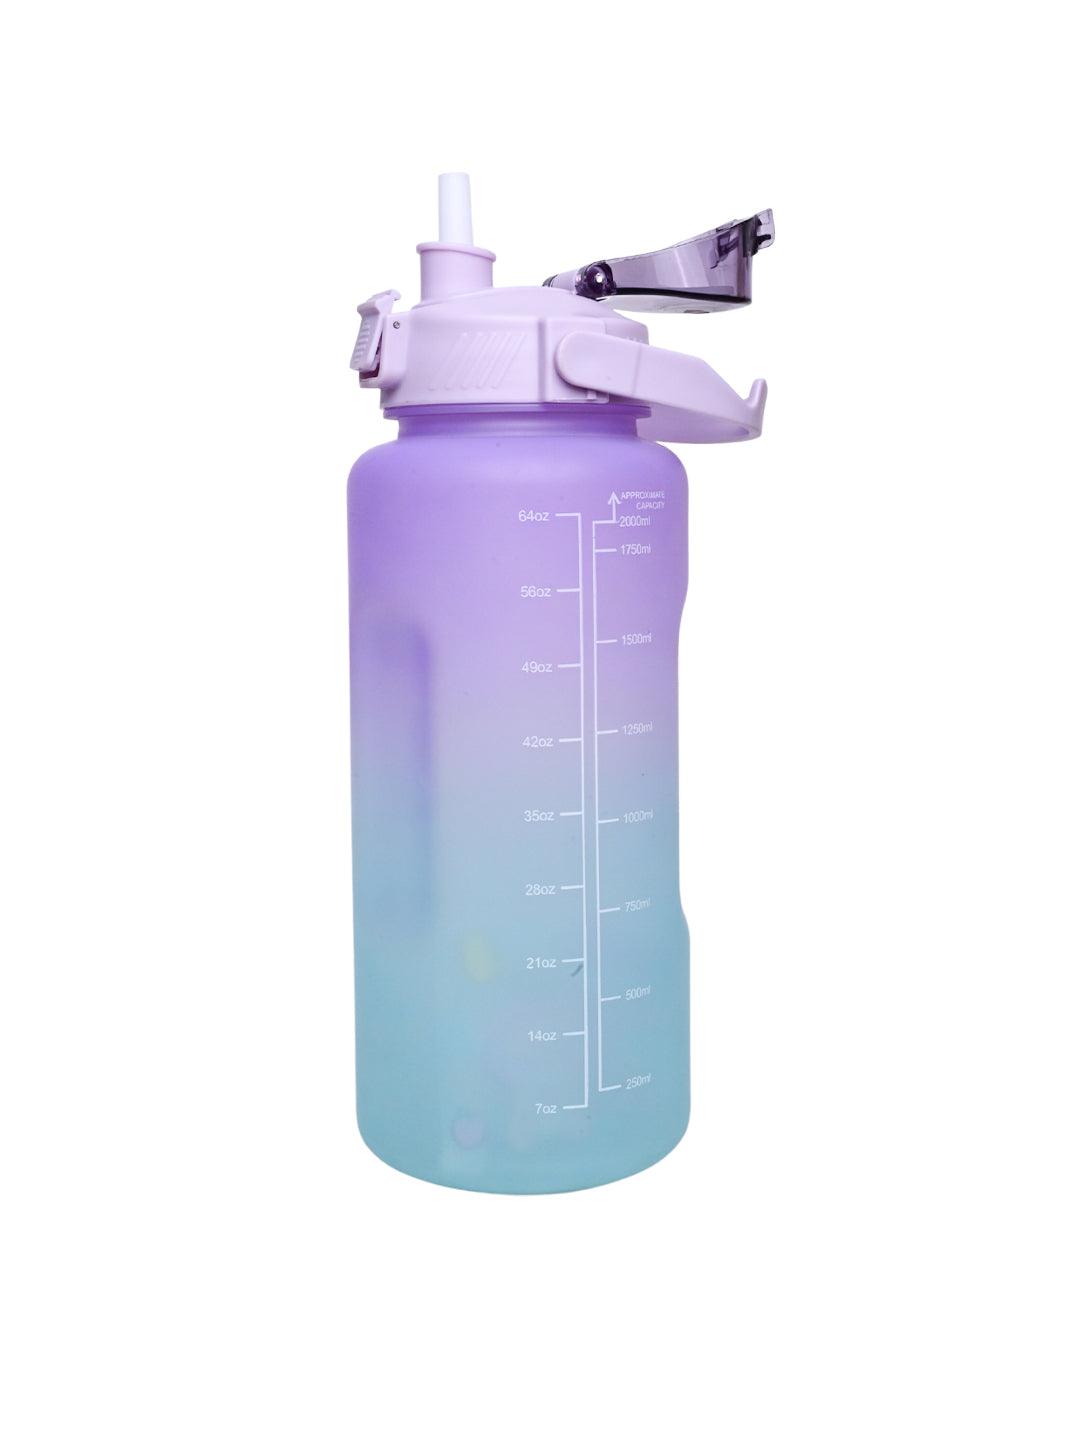 Travel Bottle Water B 400ml - Blue Purple - MARKET 99